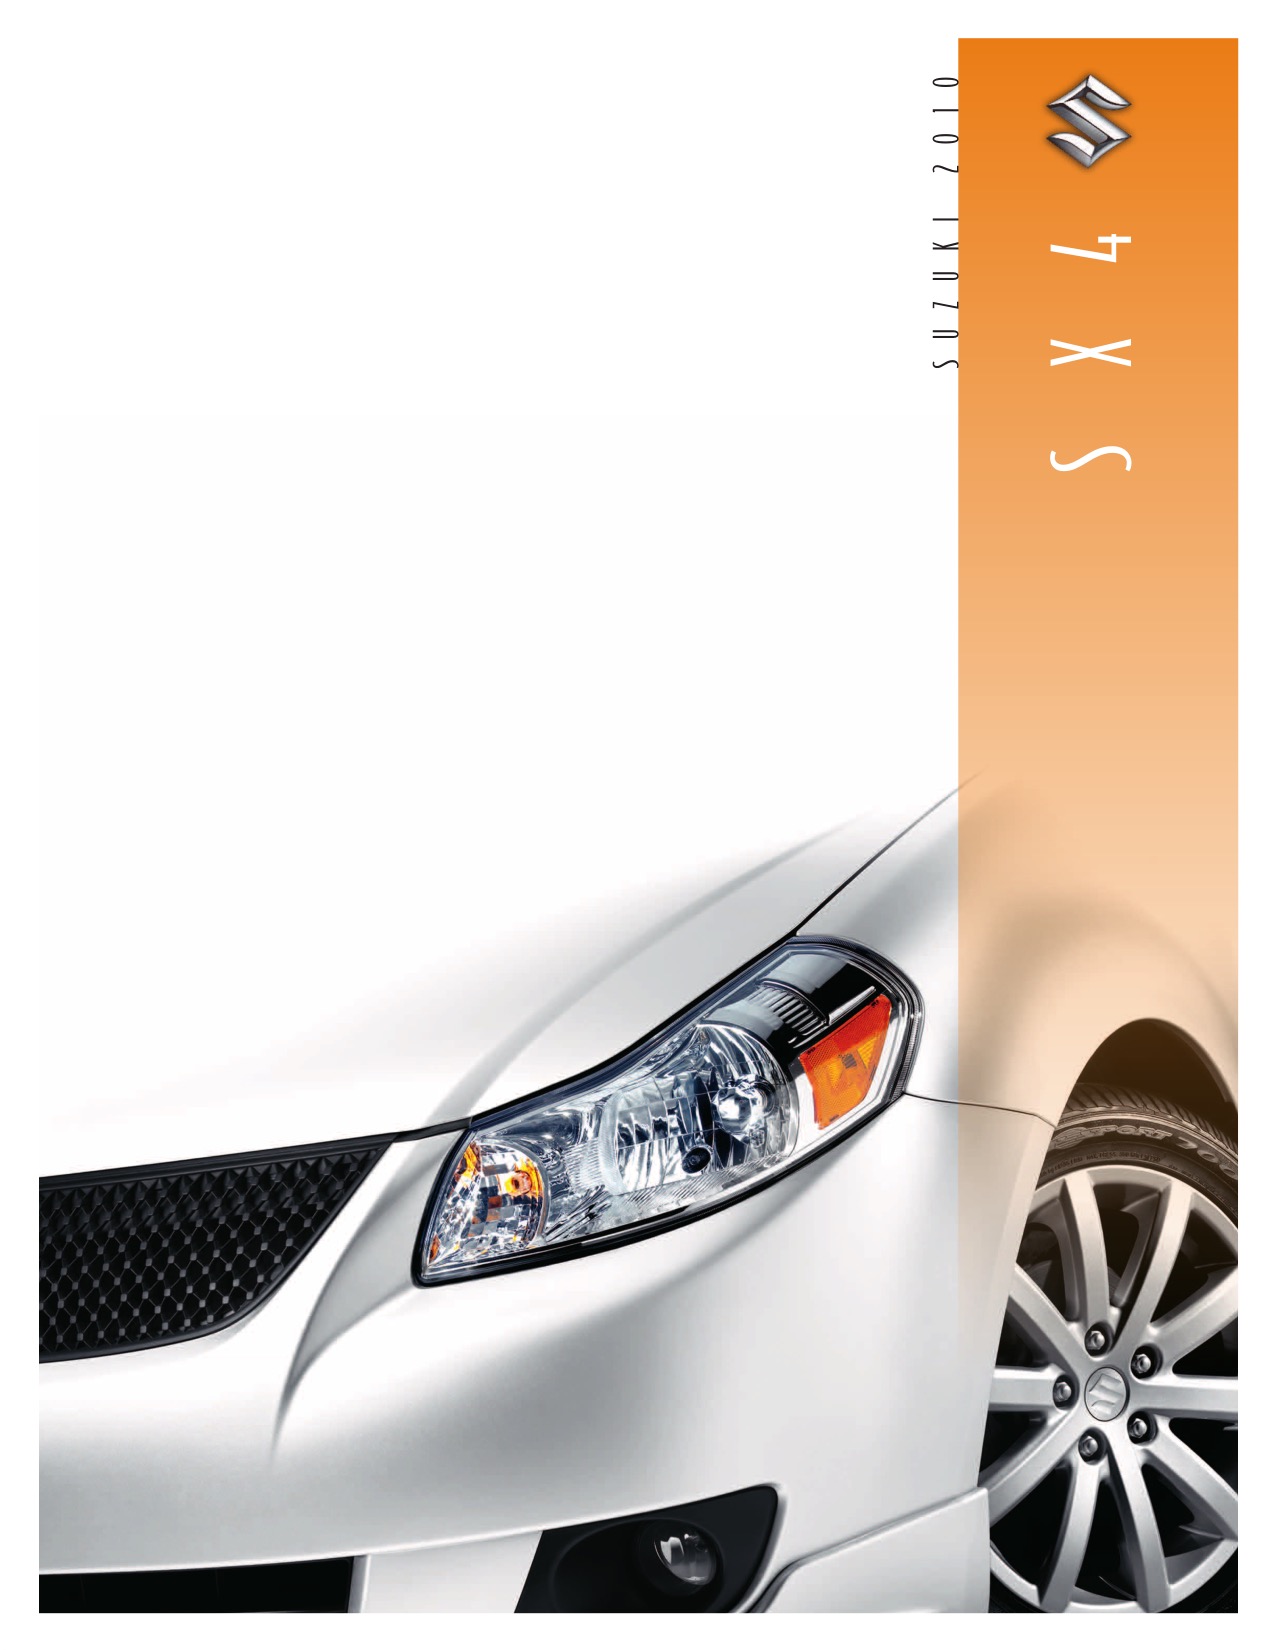 2010 Suzuki SX4 Brochure